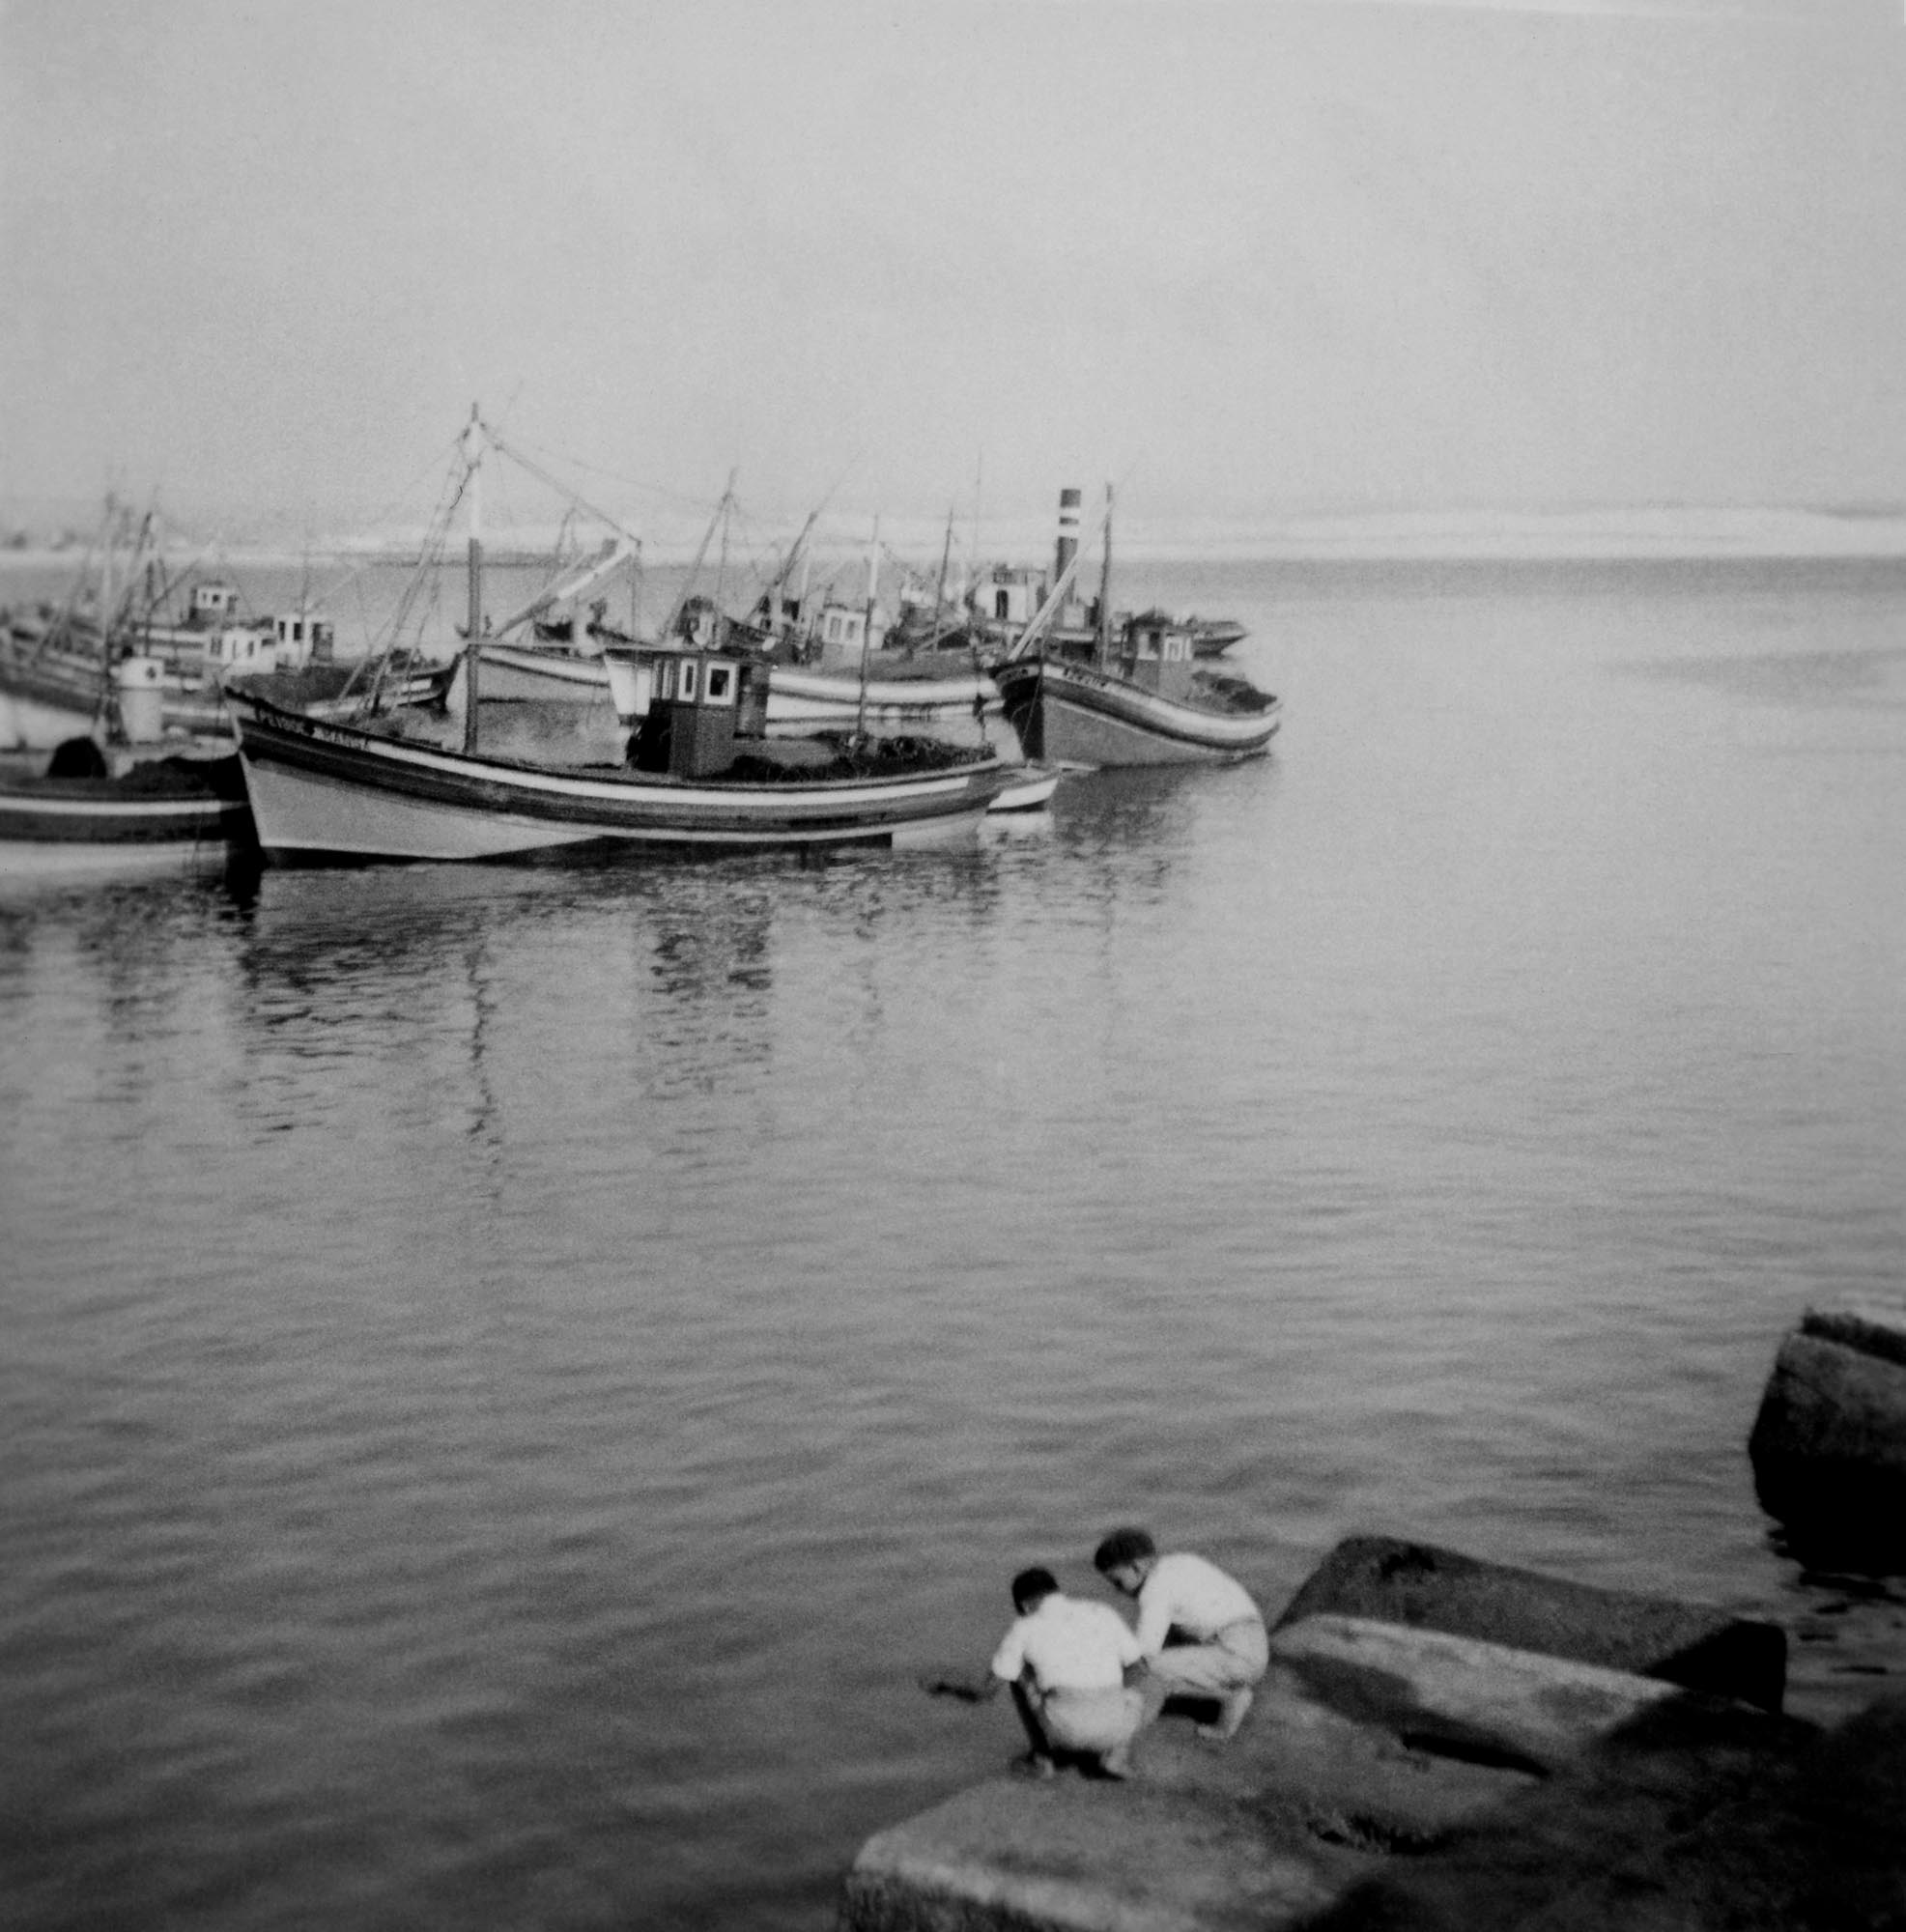 Boys, Boats and Time, Peniche, circa 1950's